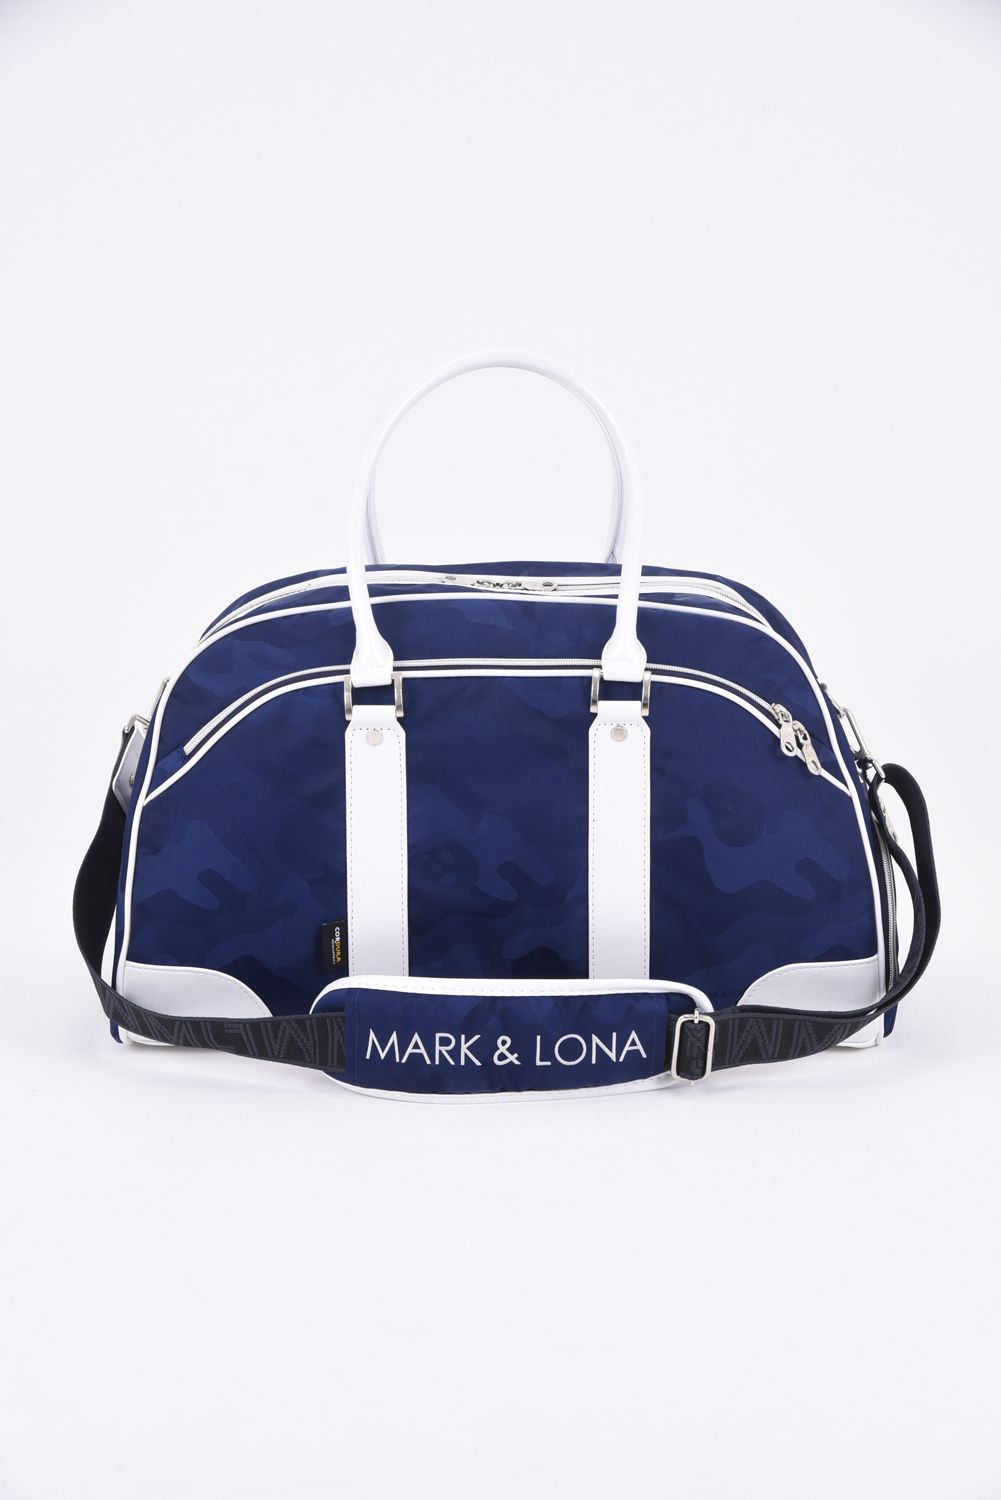 MARK &LONA Camo Boston Bag ボストンバック